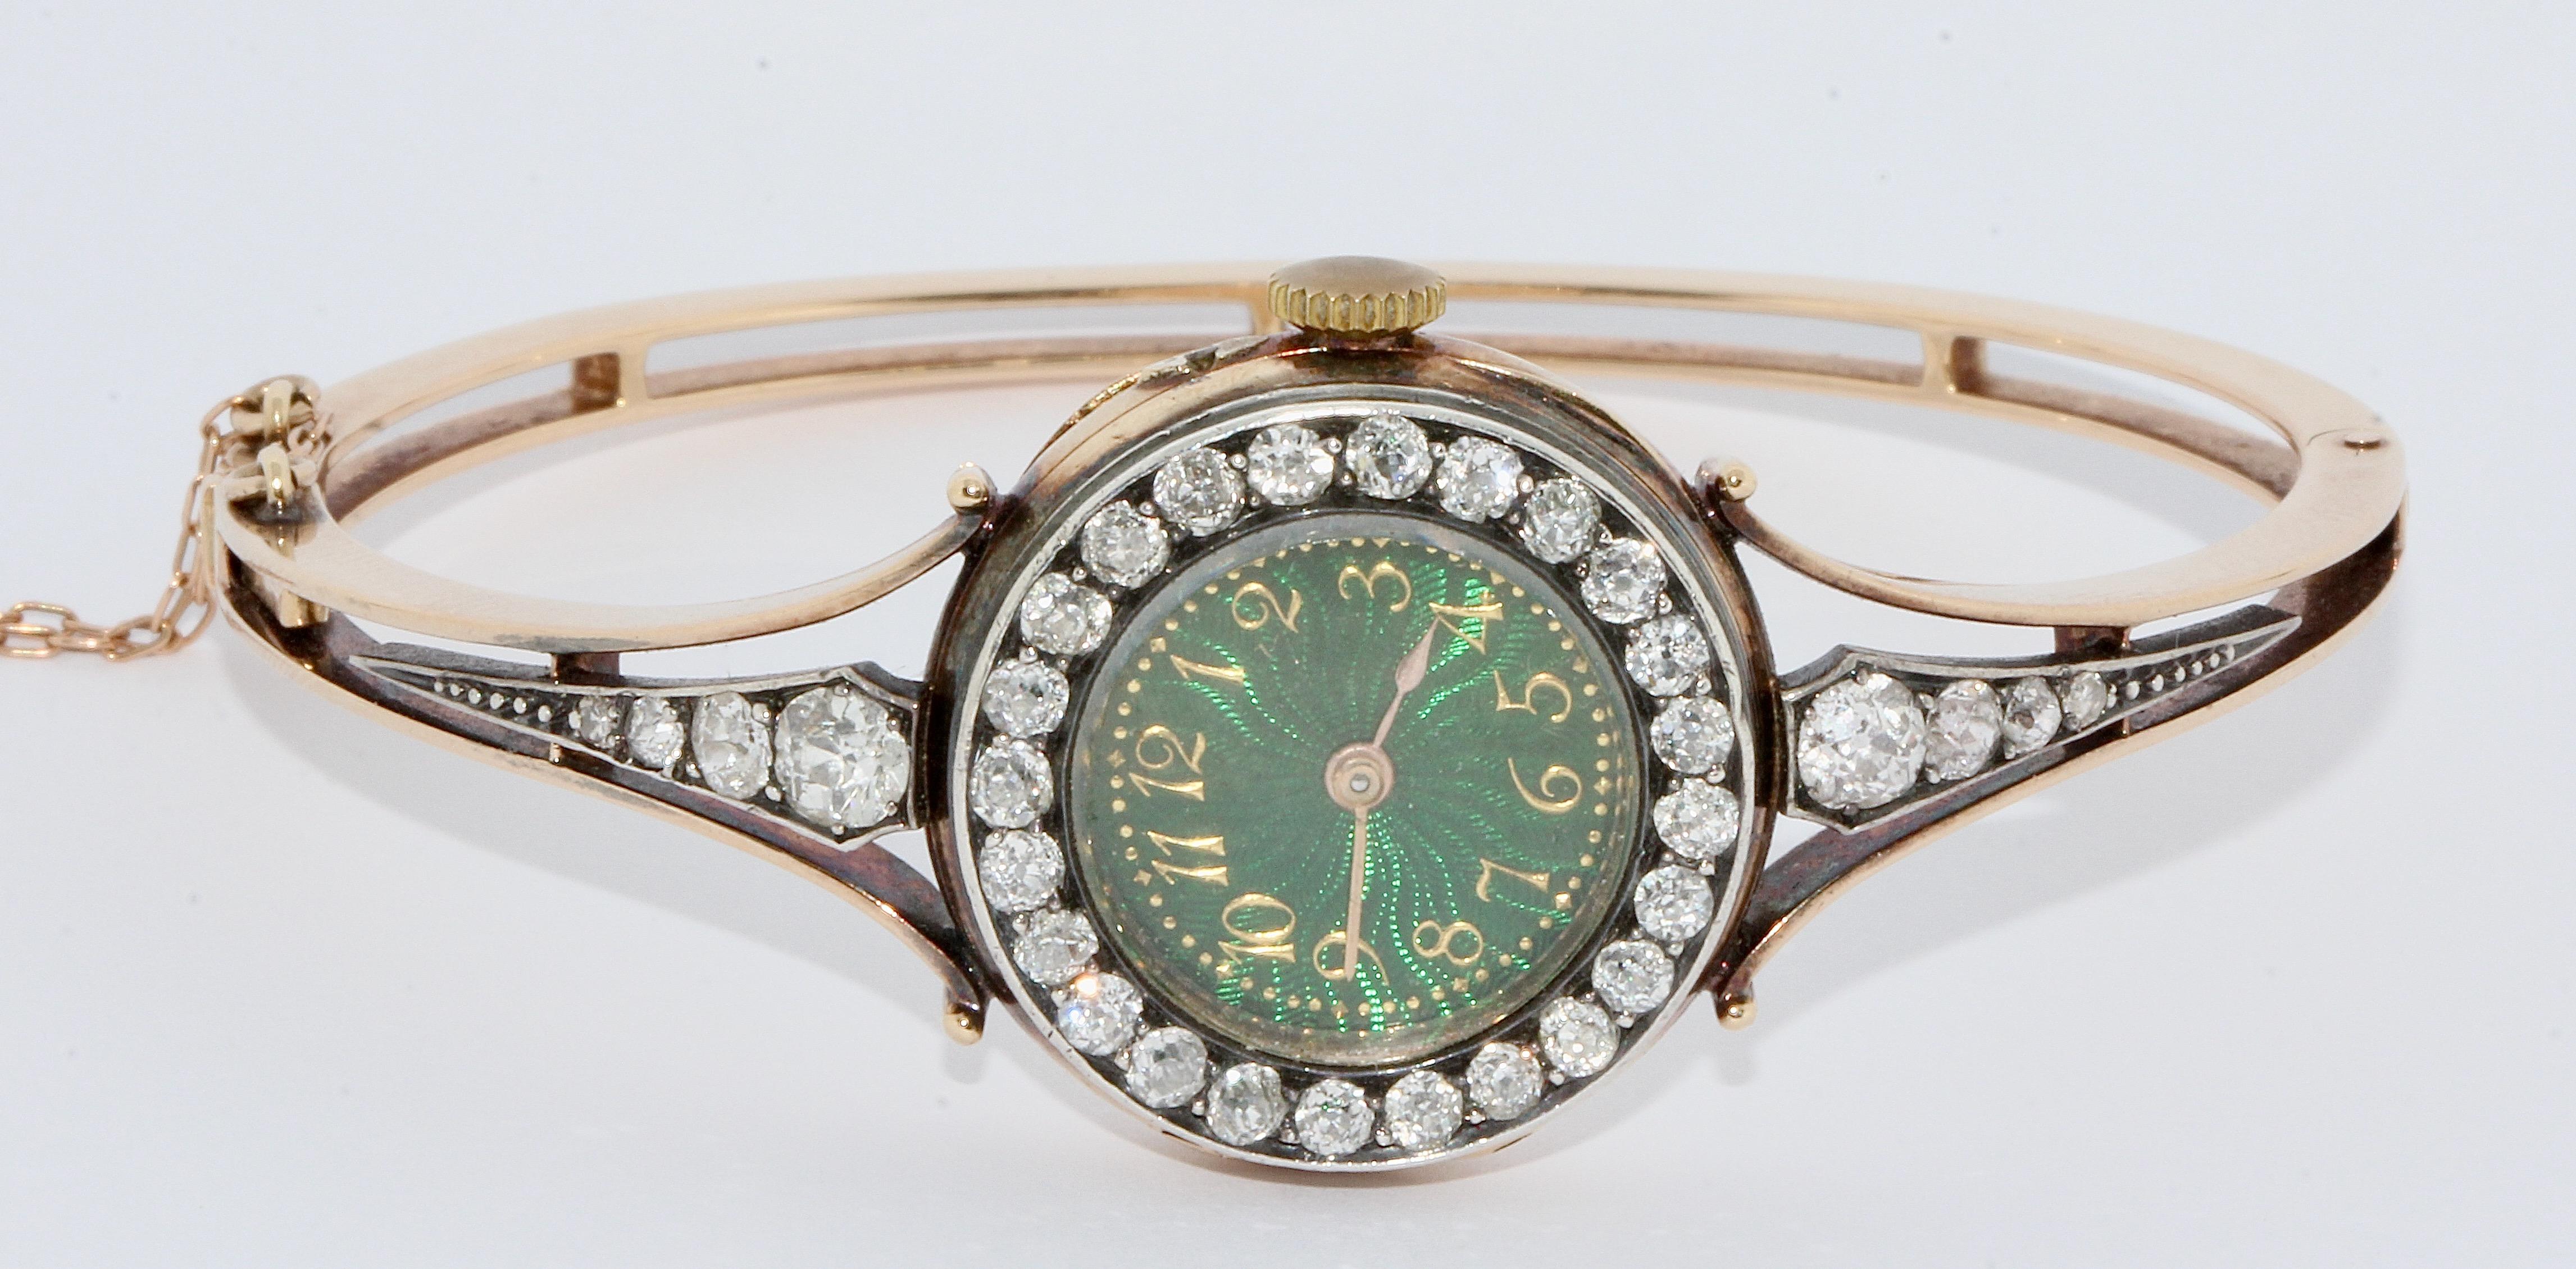 Prächtige, antike Damenarmbanduhr aus Gold mit Diamanten und Emaille-Zifferblatt.


Die Uhr ist mit insgesamt 32 Diamanten im Altschliff besetzt.
Auffällig ist das schöne, grüne Emailzifferblatt mit goldenen arabischen Ziffern.

Armreif und Etui